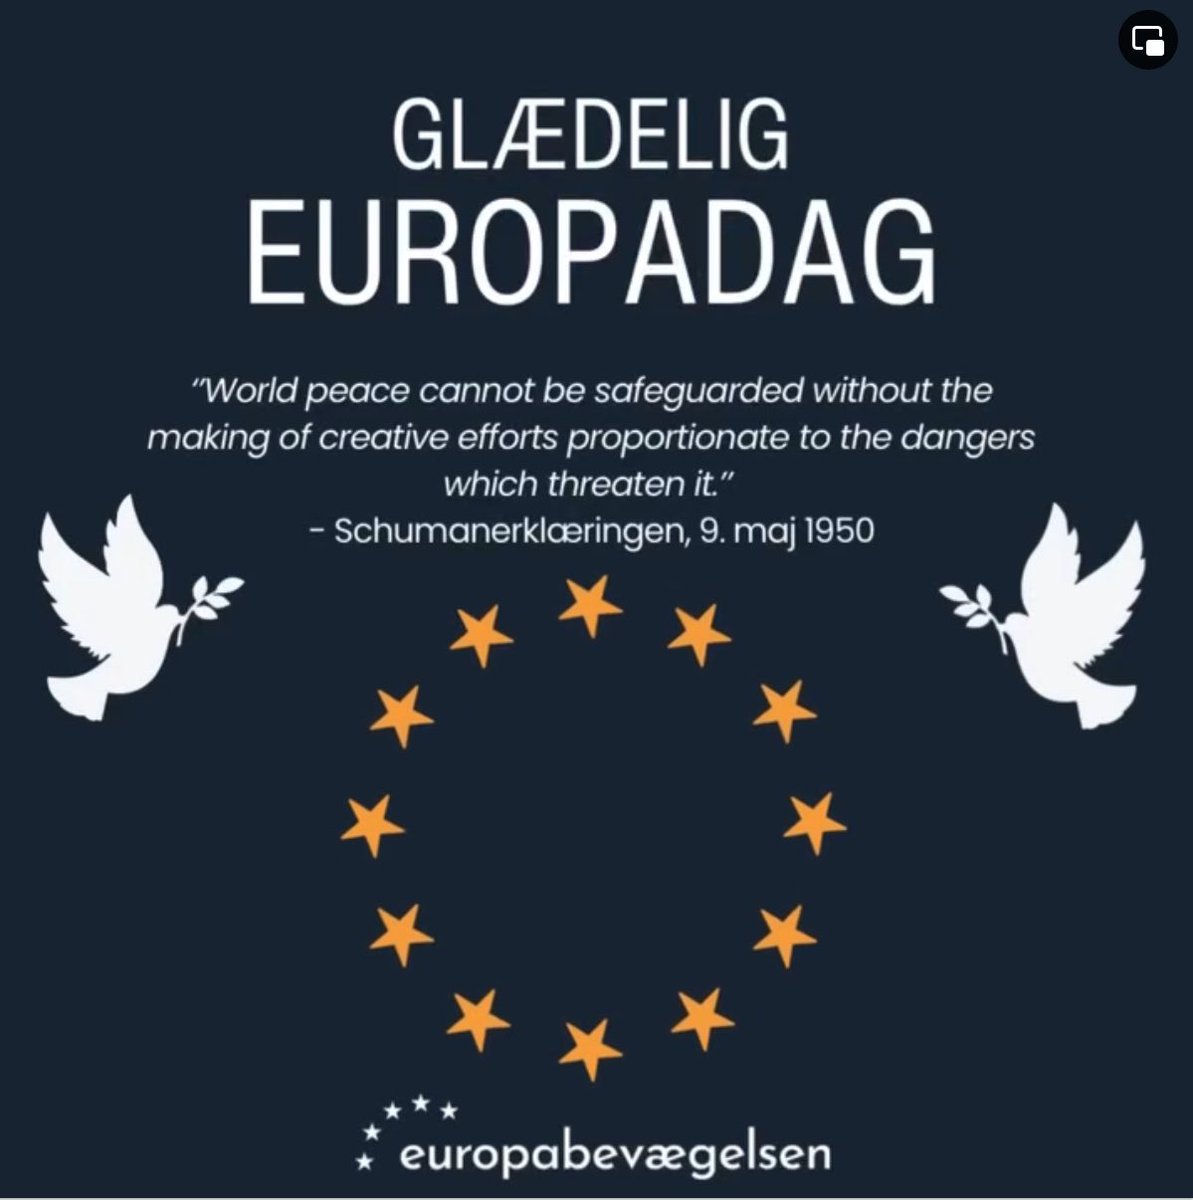 I dag er det Europadag 🇪🇺 Dagen hvor vi fejre starten på #EU med freden som et centralt element i samarbejdet. Et fortsat stærkt samarbejde i EU er nødvendigt, så fred og sikkerhed kan sikres i fremtiden. Putins stormagtsdrømme må ikke ødelægge EU som fredsprojekt #dkpol #eupol